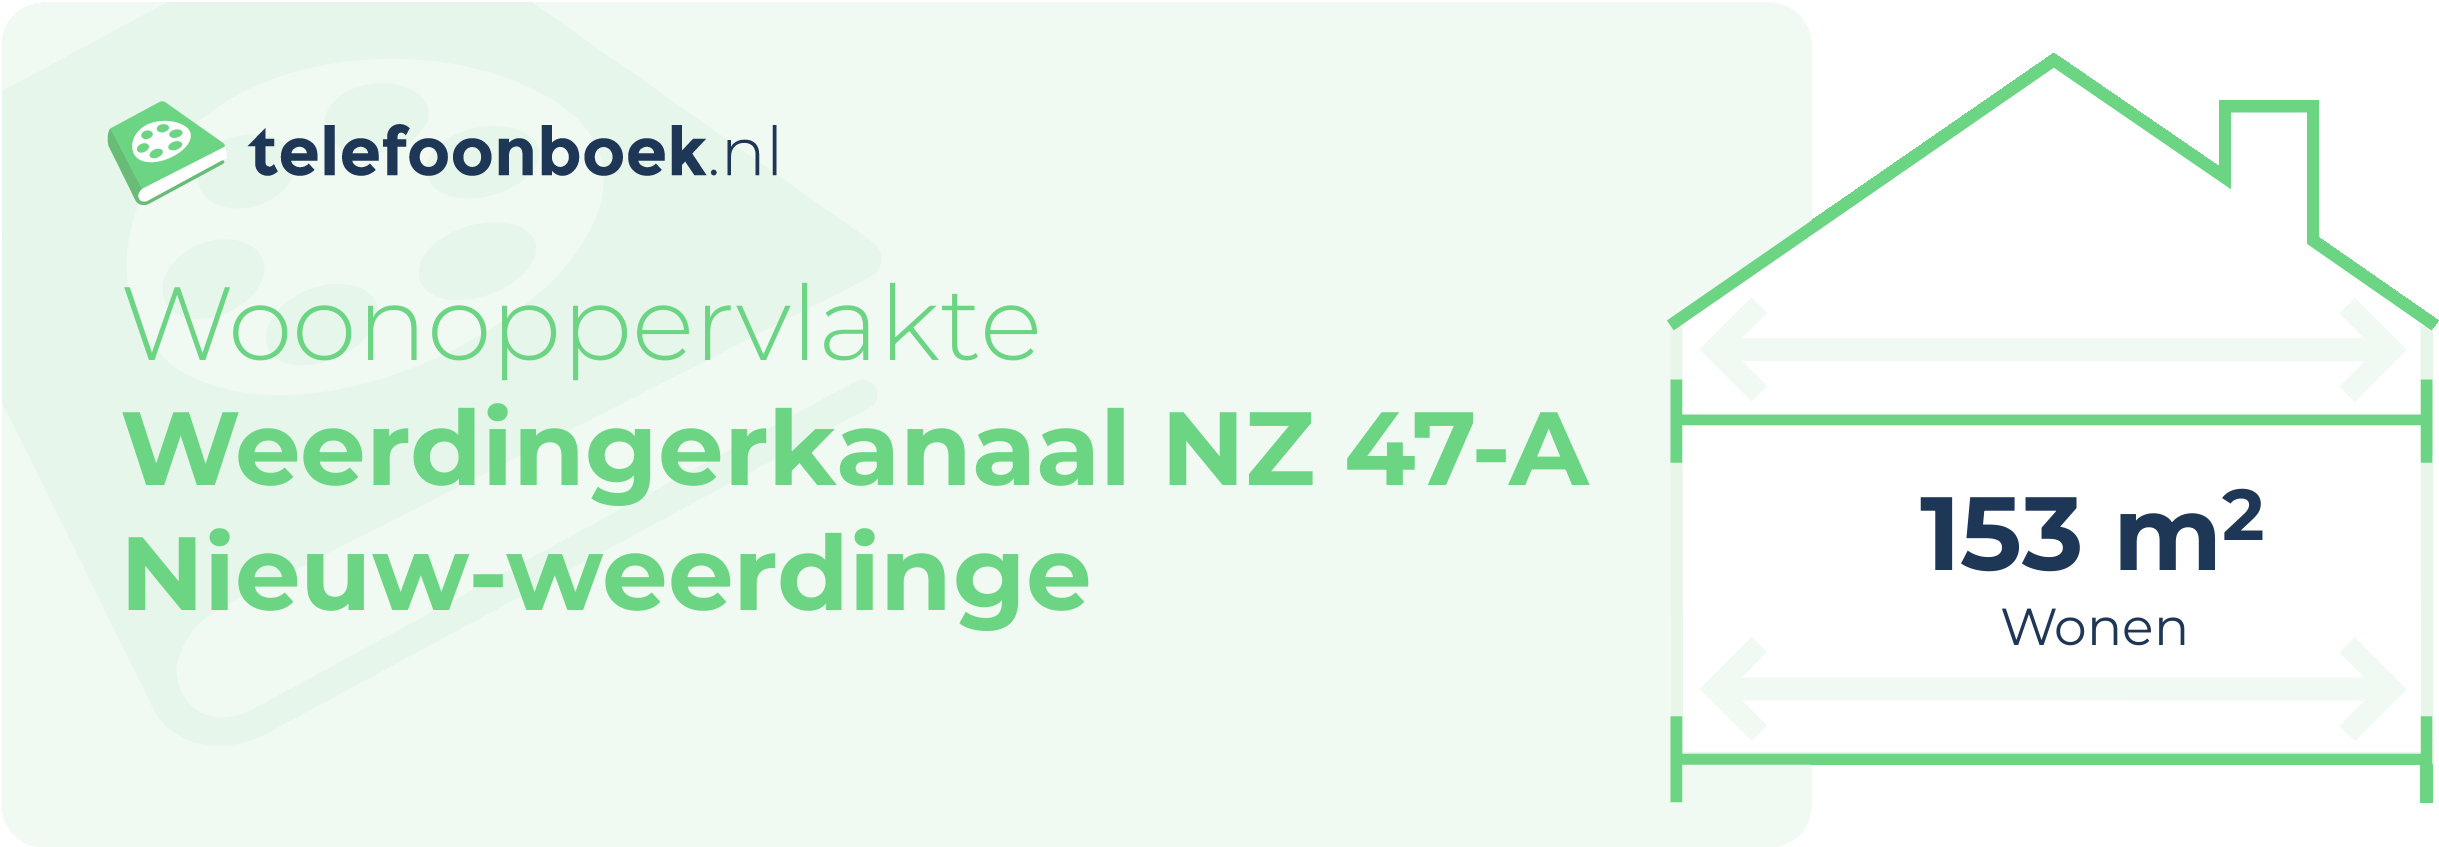 Woonoppervlakte Weerdingerkanaal NZ 47-A Nieuw-Weerdinge